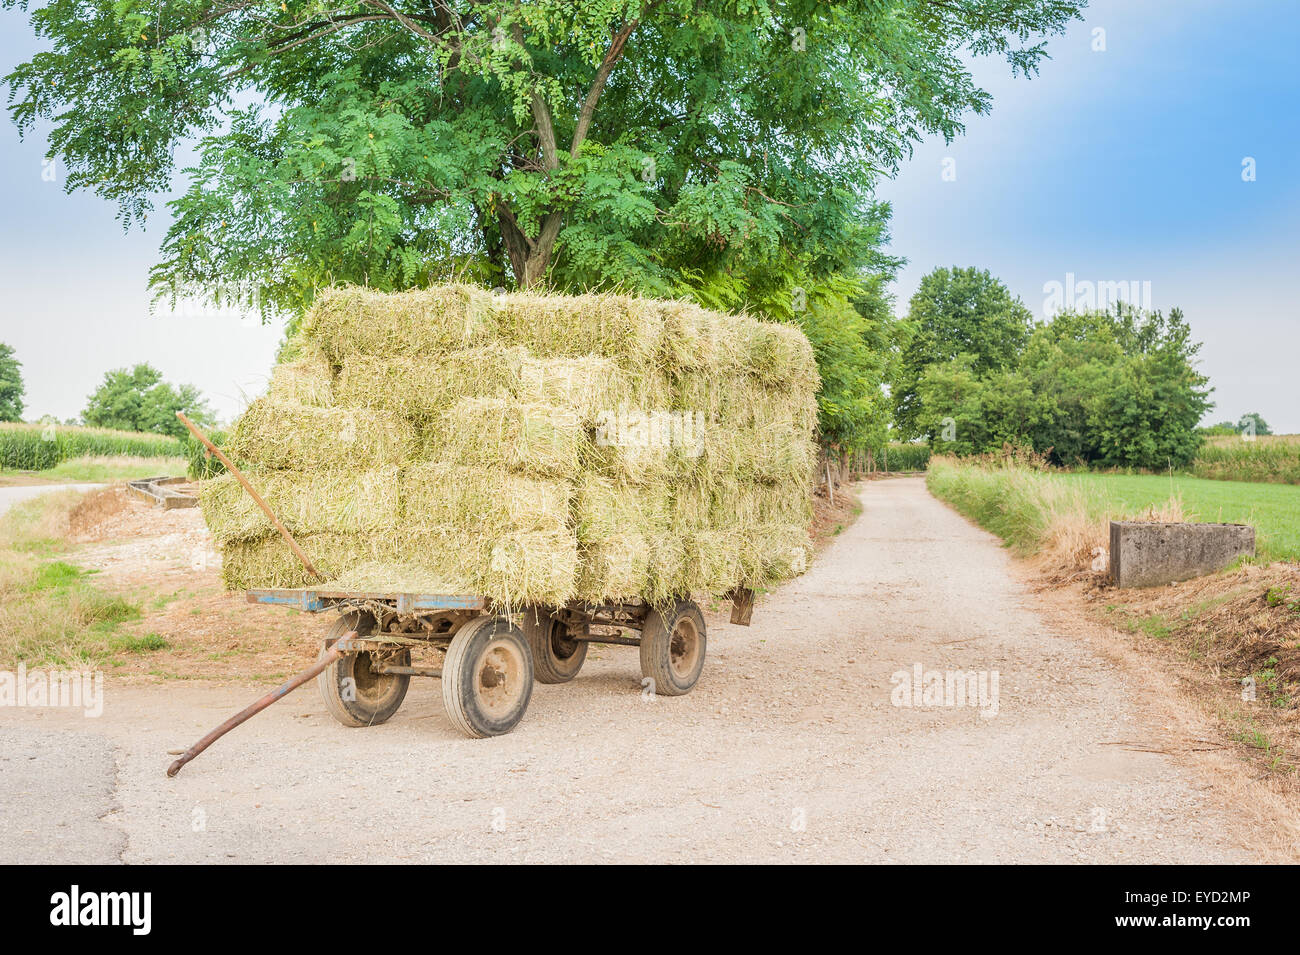 Panier ferme avec hay bales stacked à gauche sur la route Banque D'Images